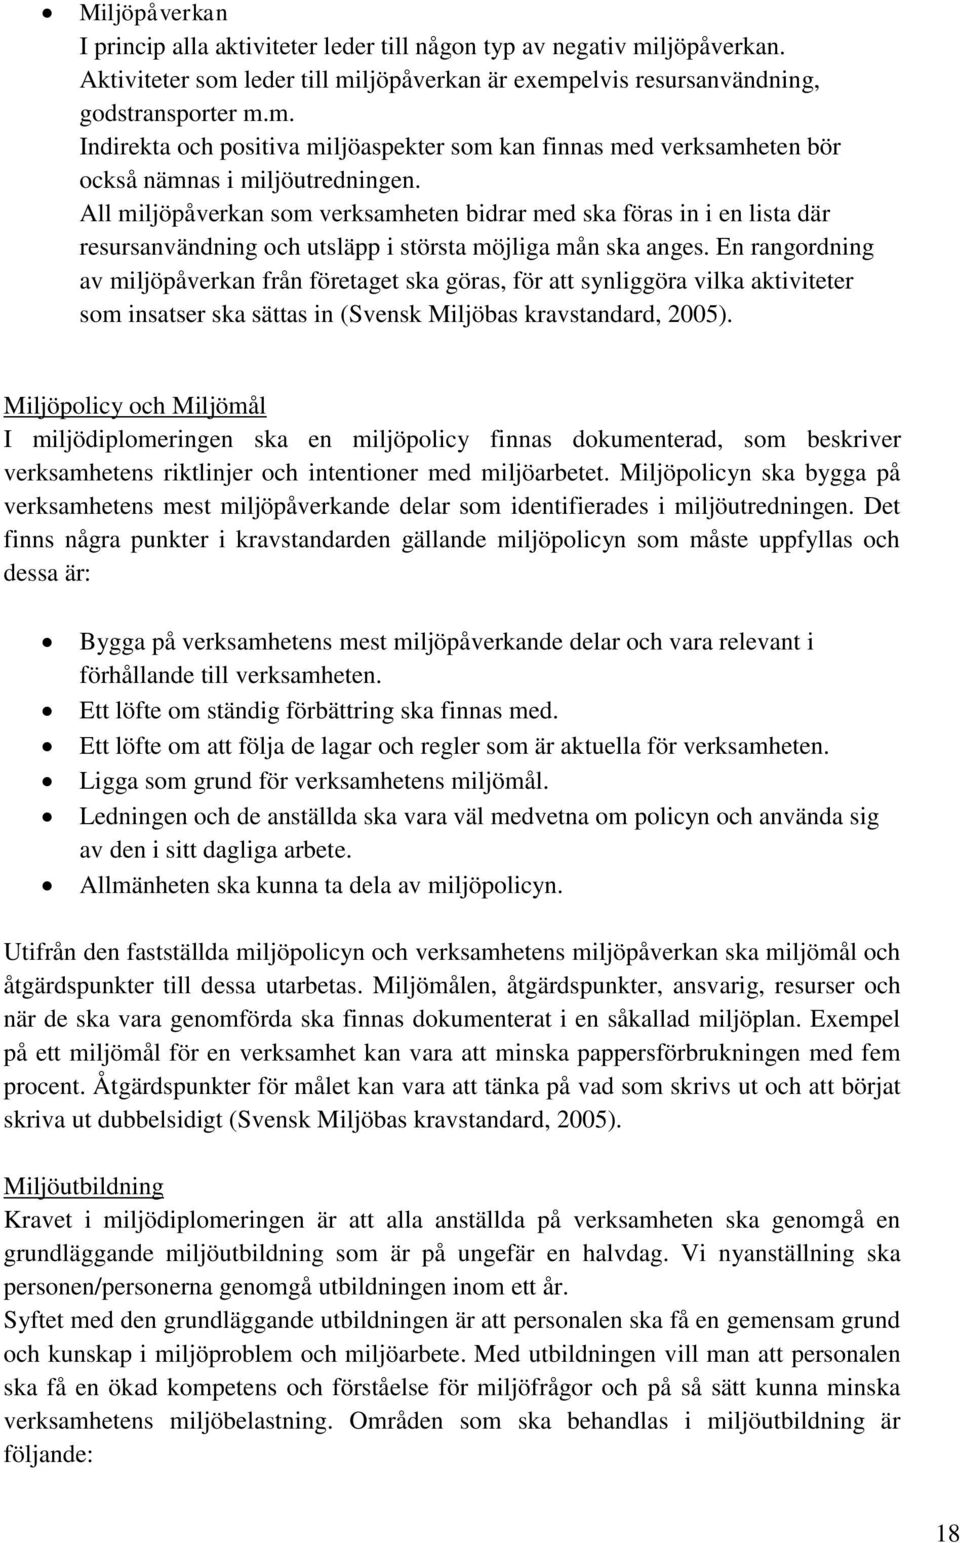 En rangordning av miljöpåverkan från företaget ska göras, för att synliggöra vilka aktiviteter som insatser ska sättas in (Svensk Miljöbas kravstandard, 2005).